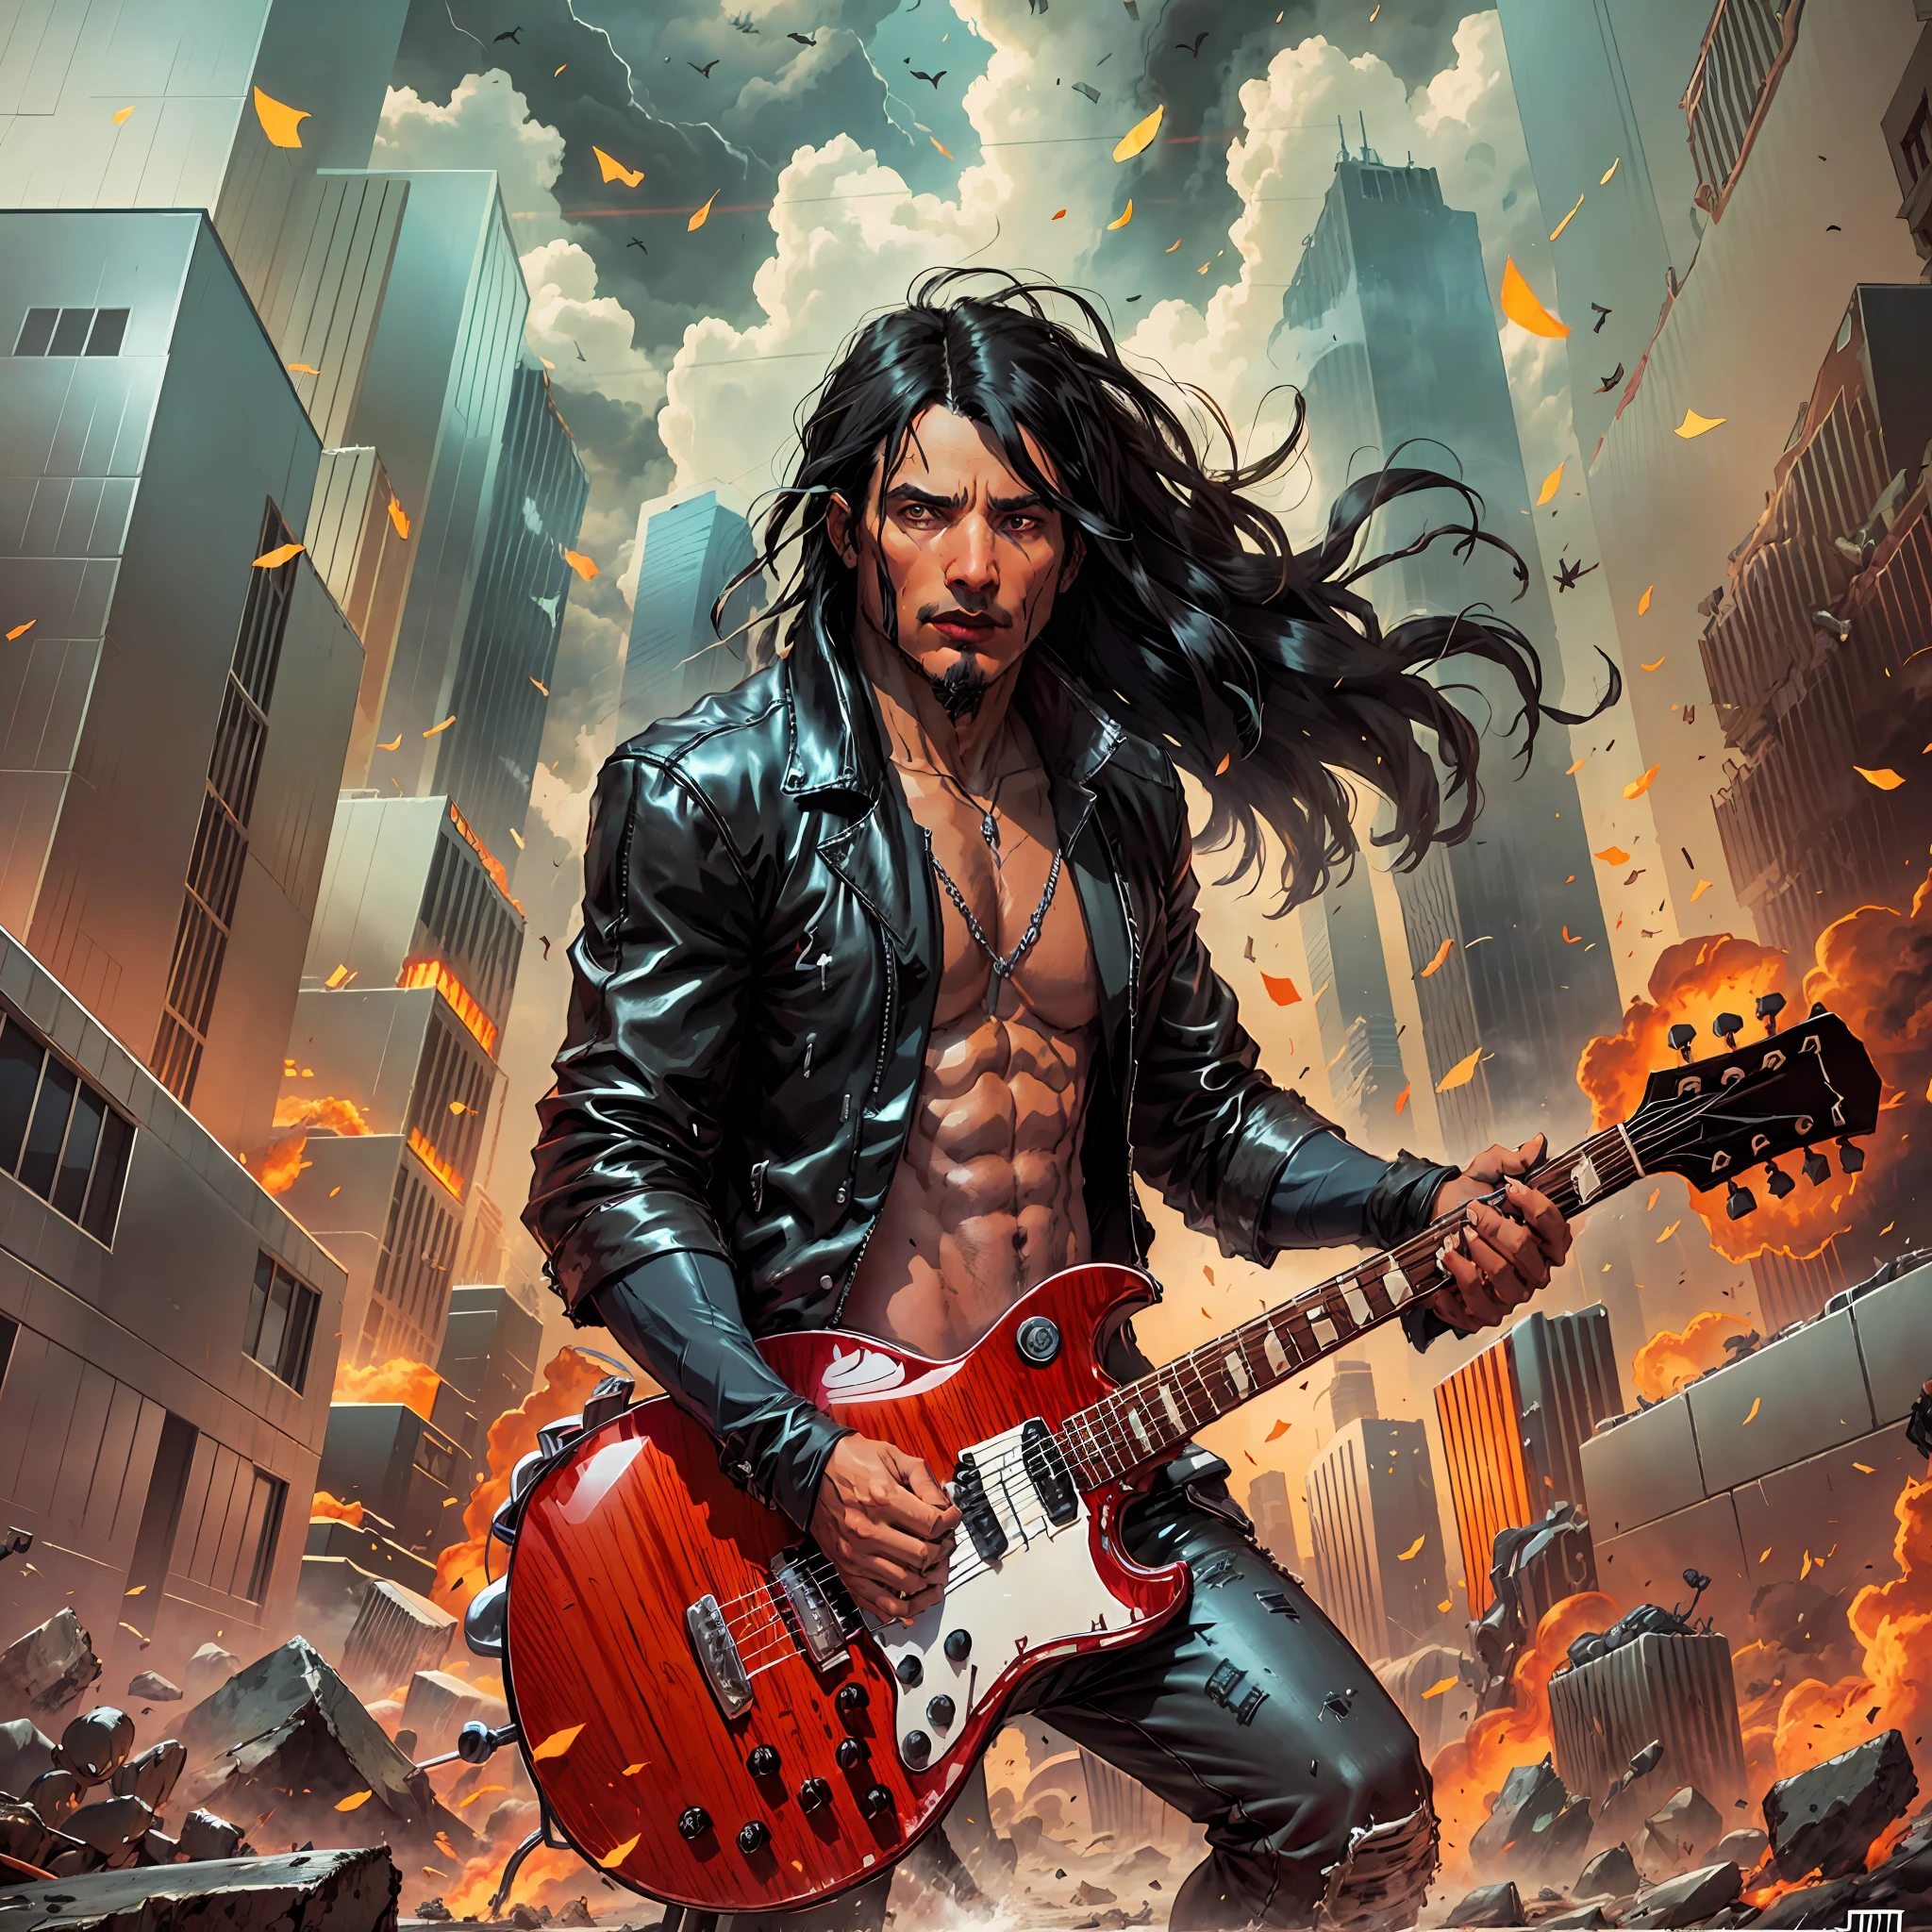 un hombre (1 hombre) con pelo largo y negro, Chaqueta estilo rock in roll negro tocando la guitarra, Una ciudad completamente destruida y en llamas, Estilo de arte digital de fantasía épica., ilustración de fantasía épica